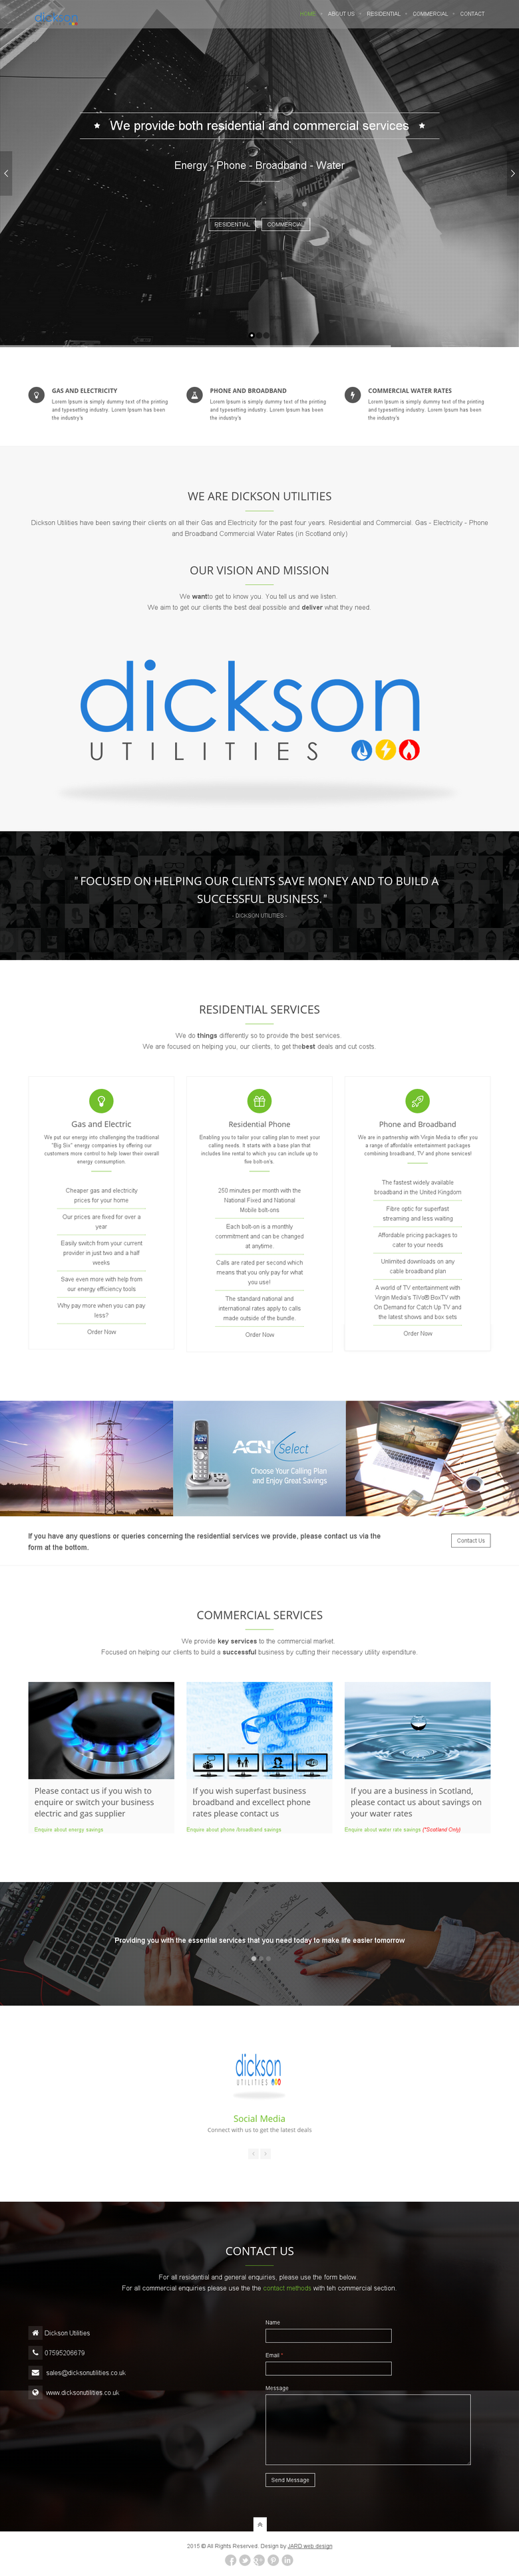 Responsive website for utilities broker